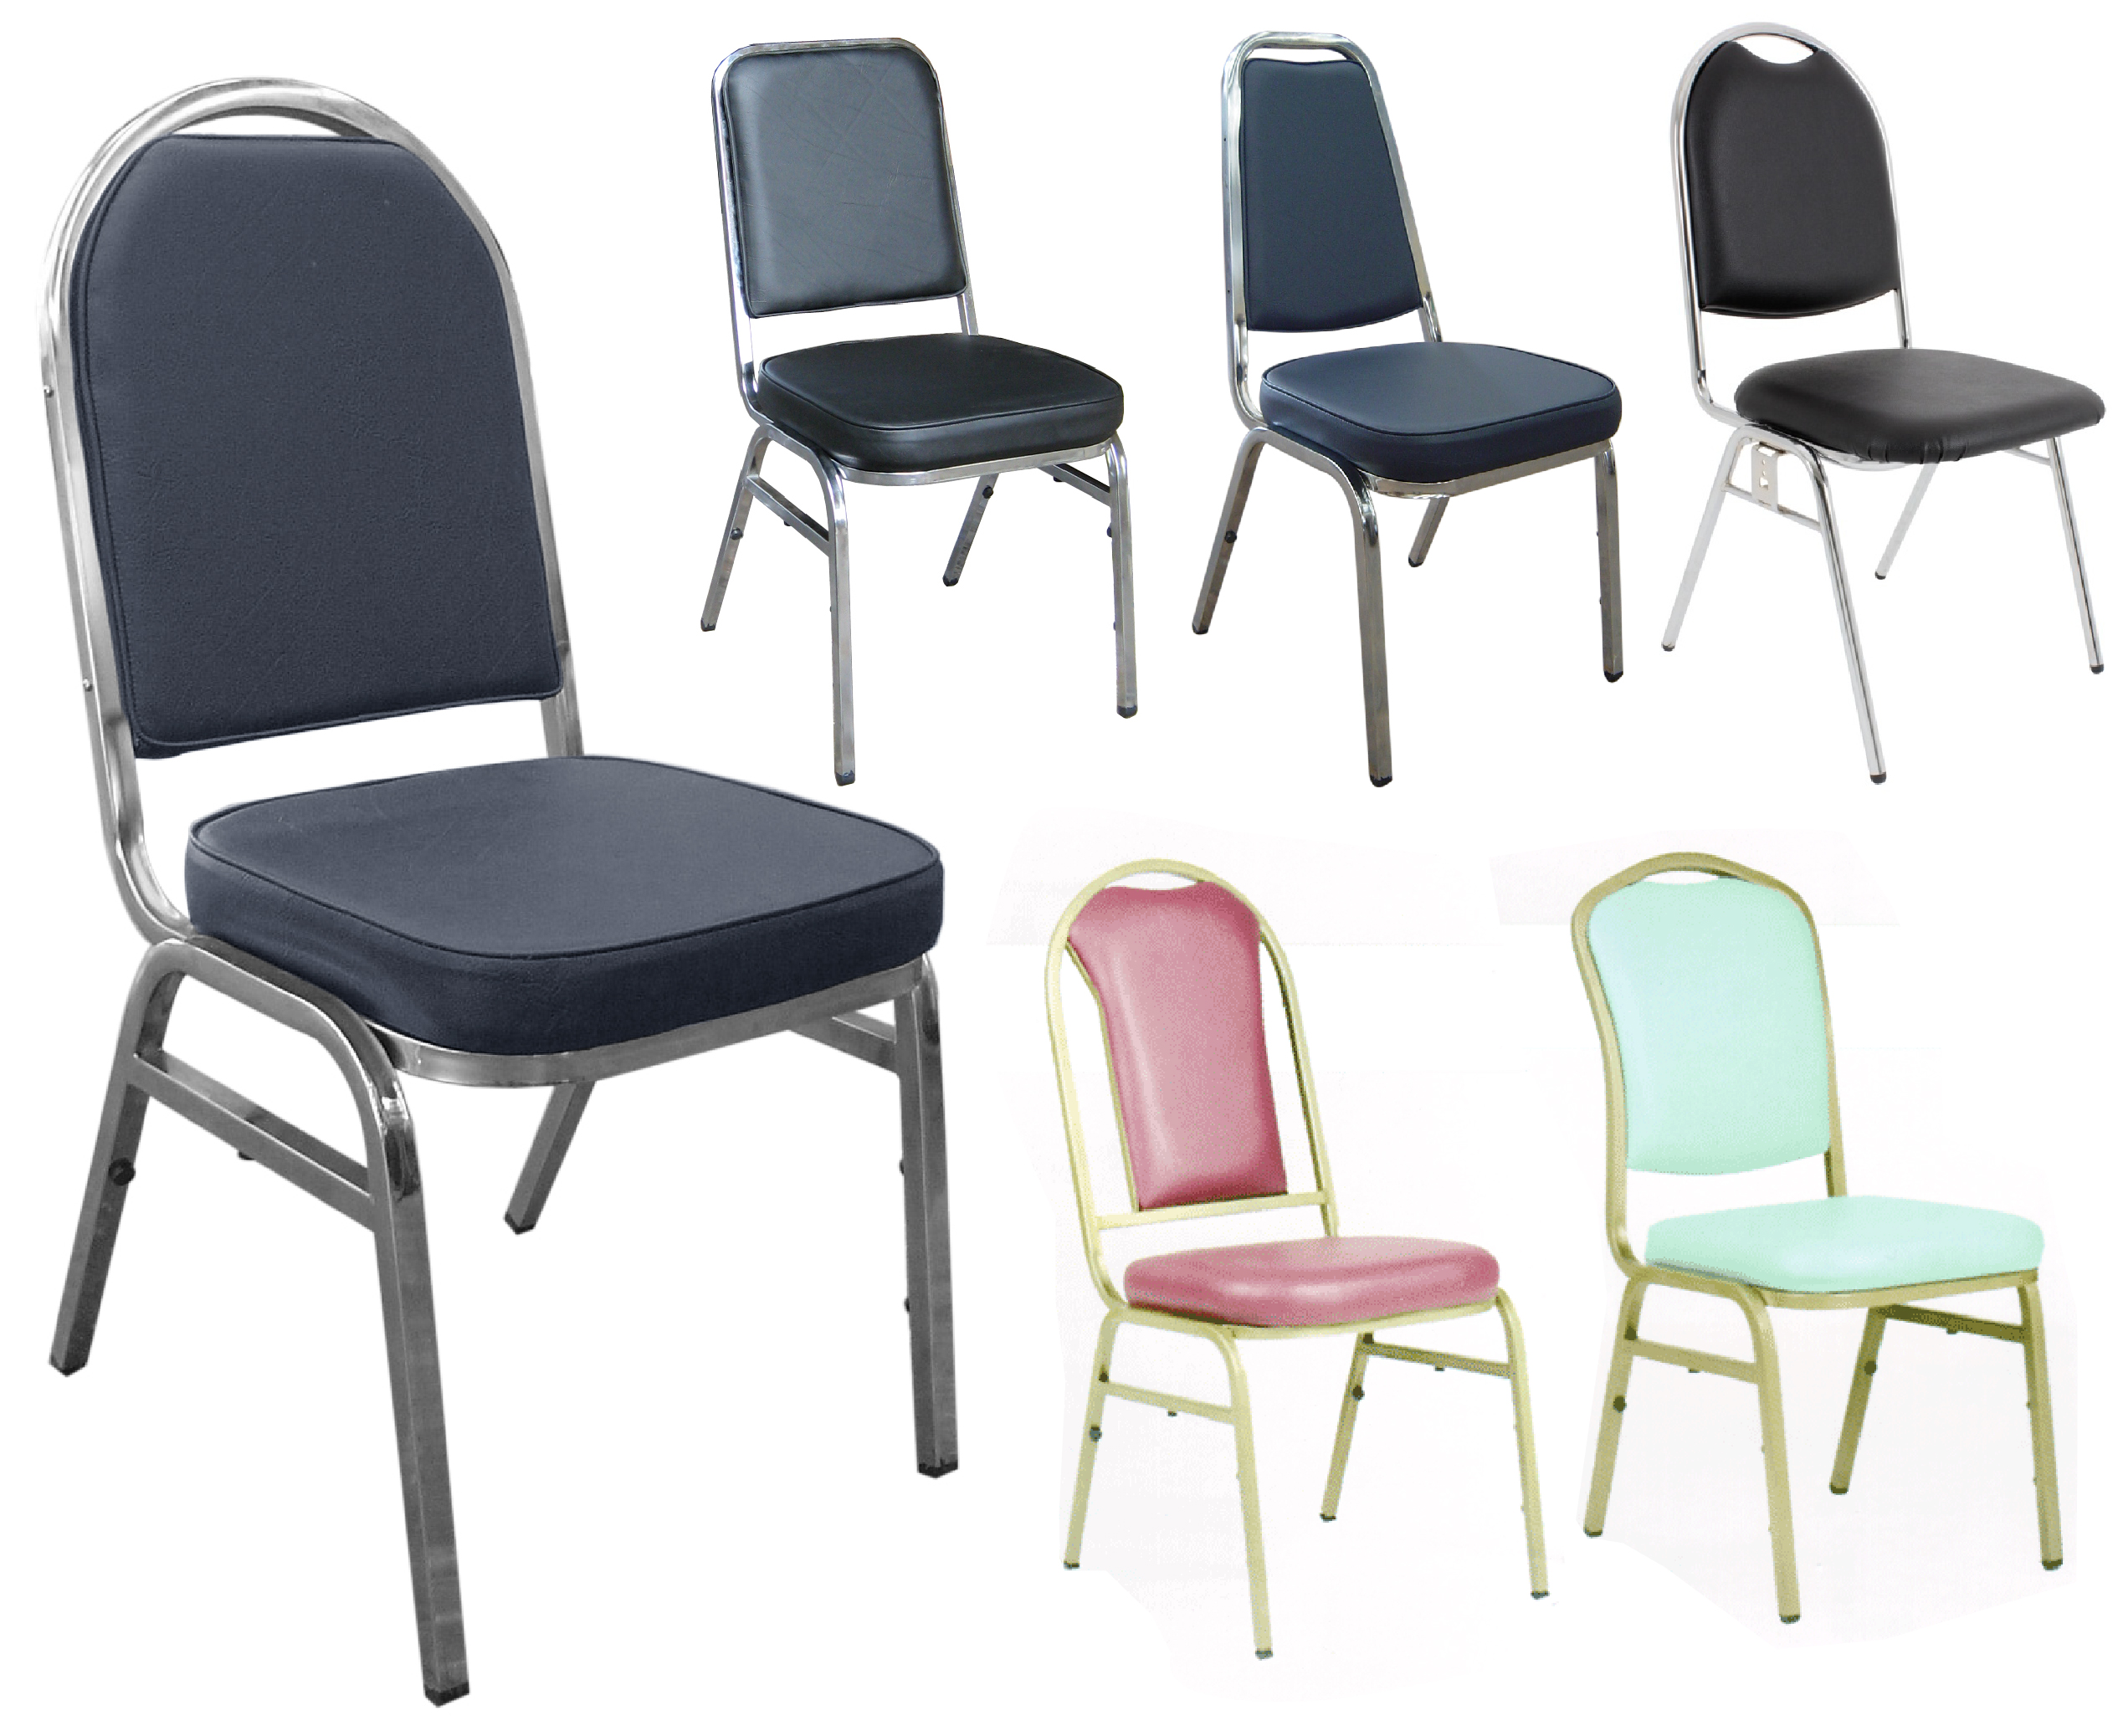 เก้าอี้อเนกประสงค์ เก้าอี้จัดเลี้ยง ที่นั่งบุฟองน้ำหนังเทียม ผ้าฝ้าย